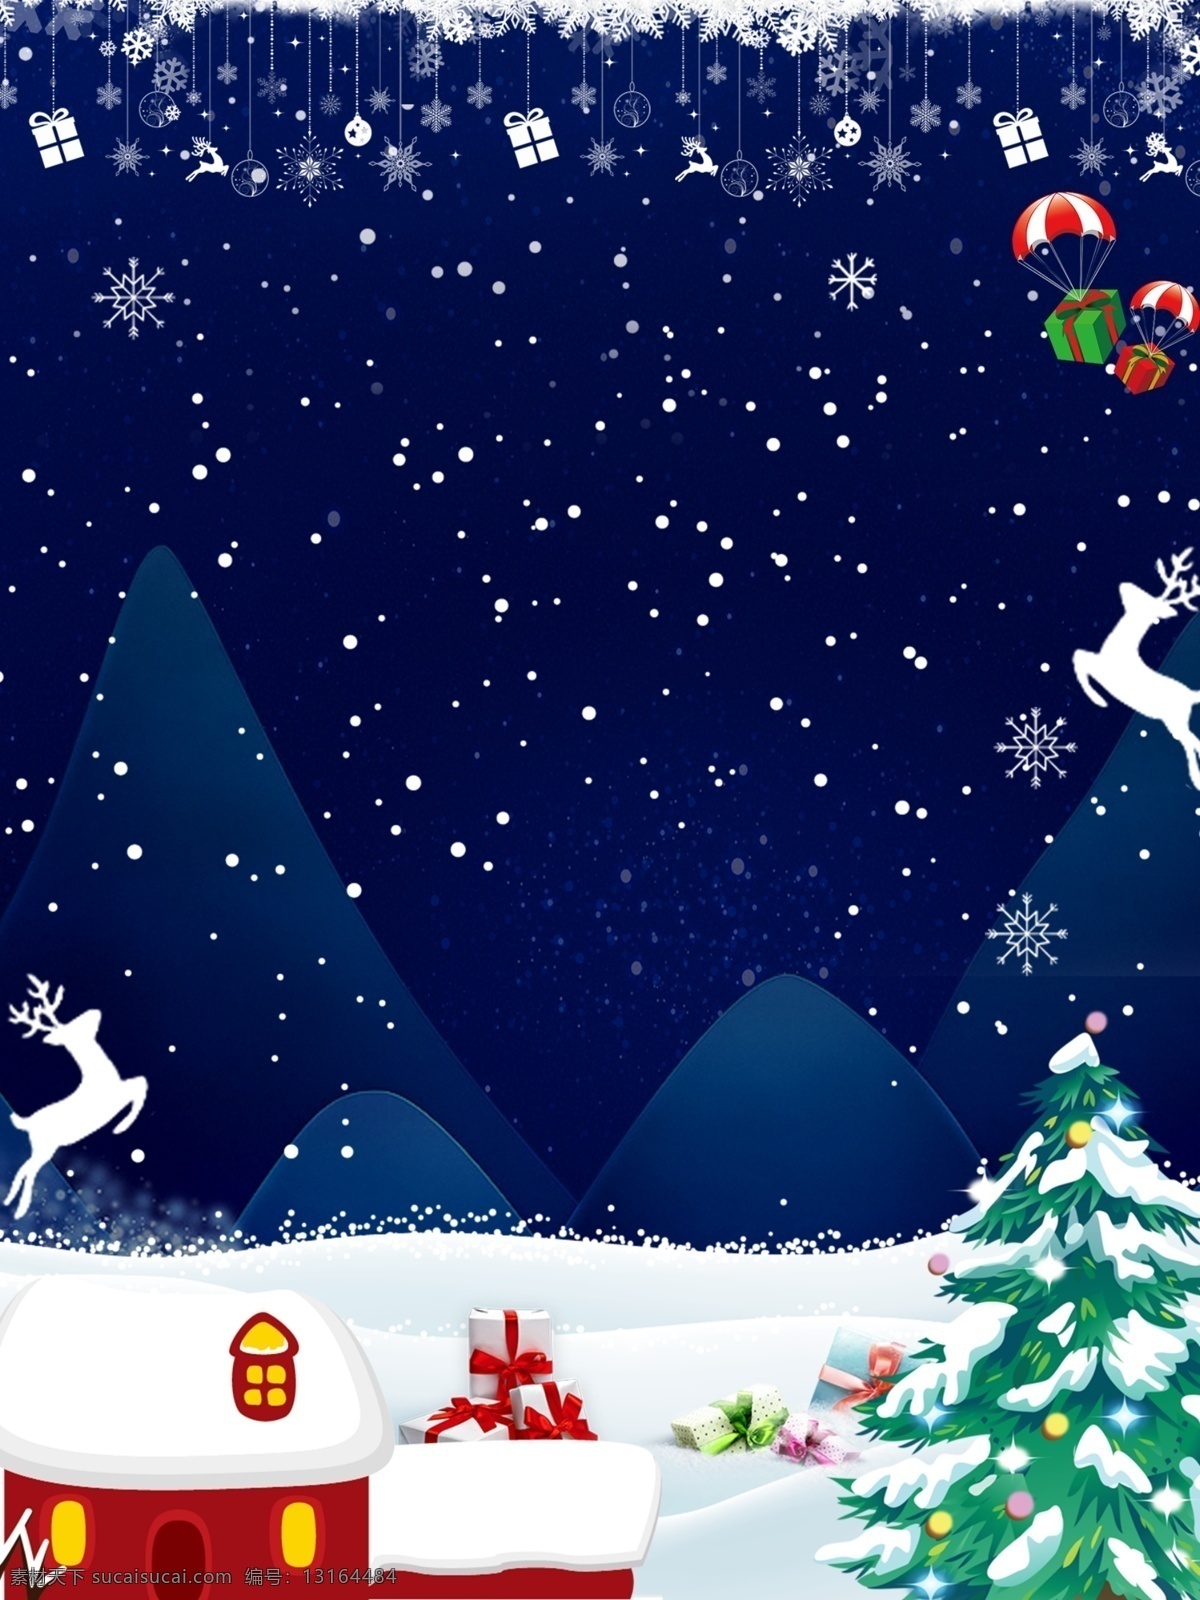 圣诞节 促销 宣传 背景 冬天 冬季 跨年 平安夜 圣诞树 大雪 雪天 倒数 迎新 新年 圣诞前夜